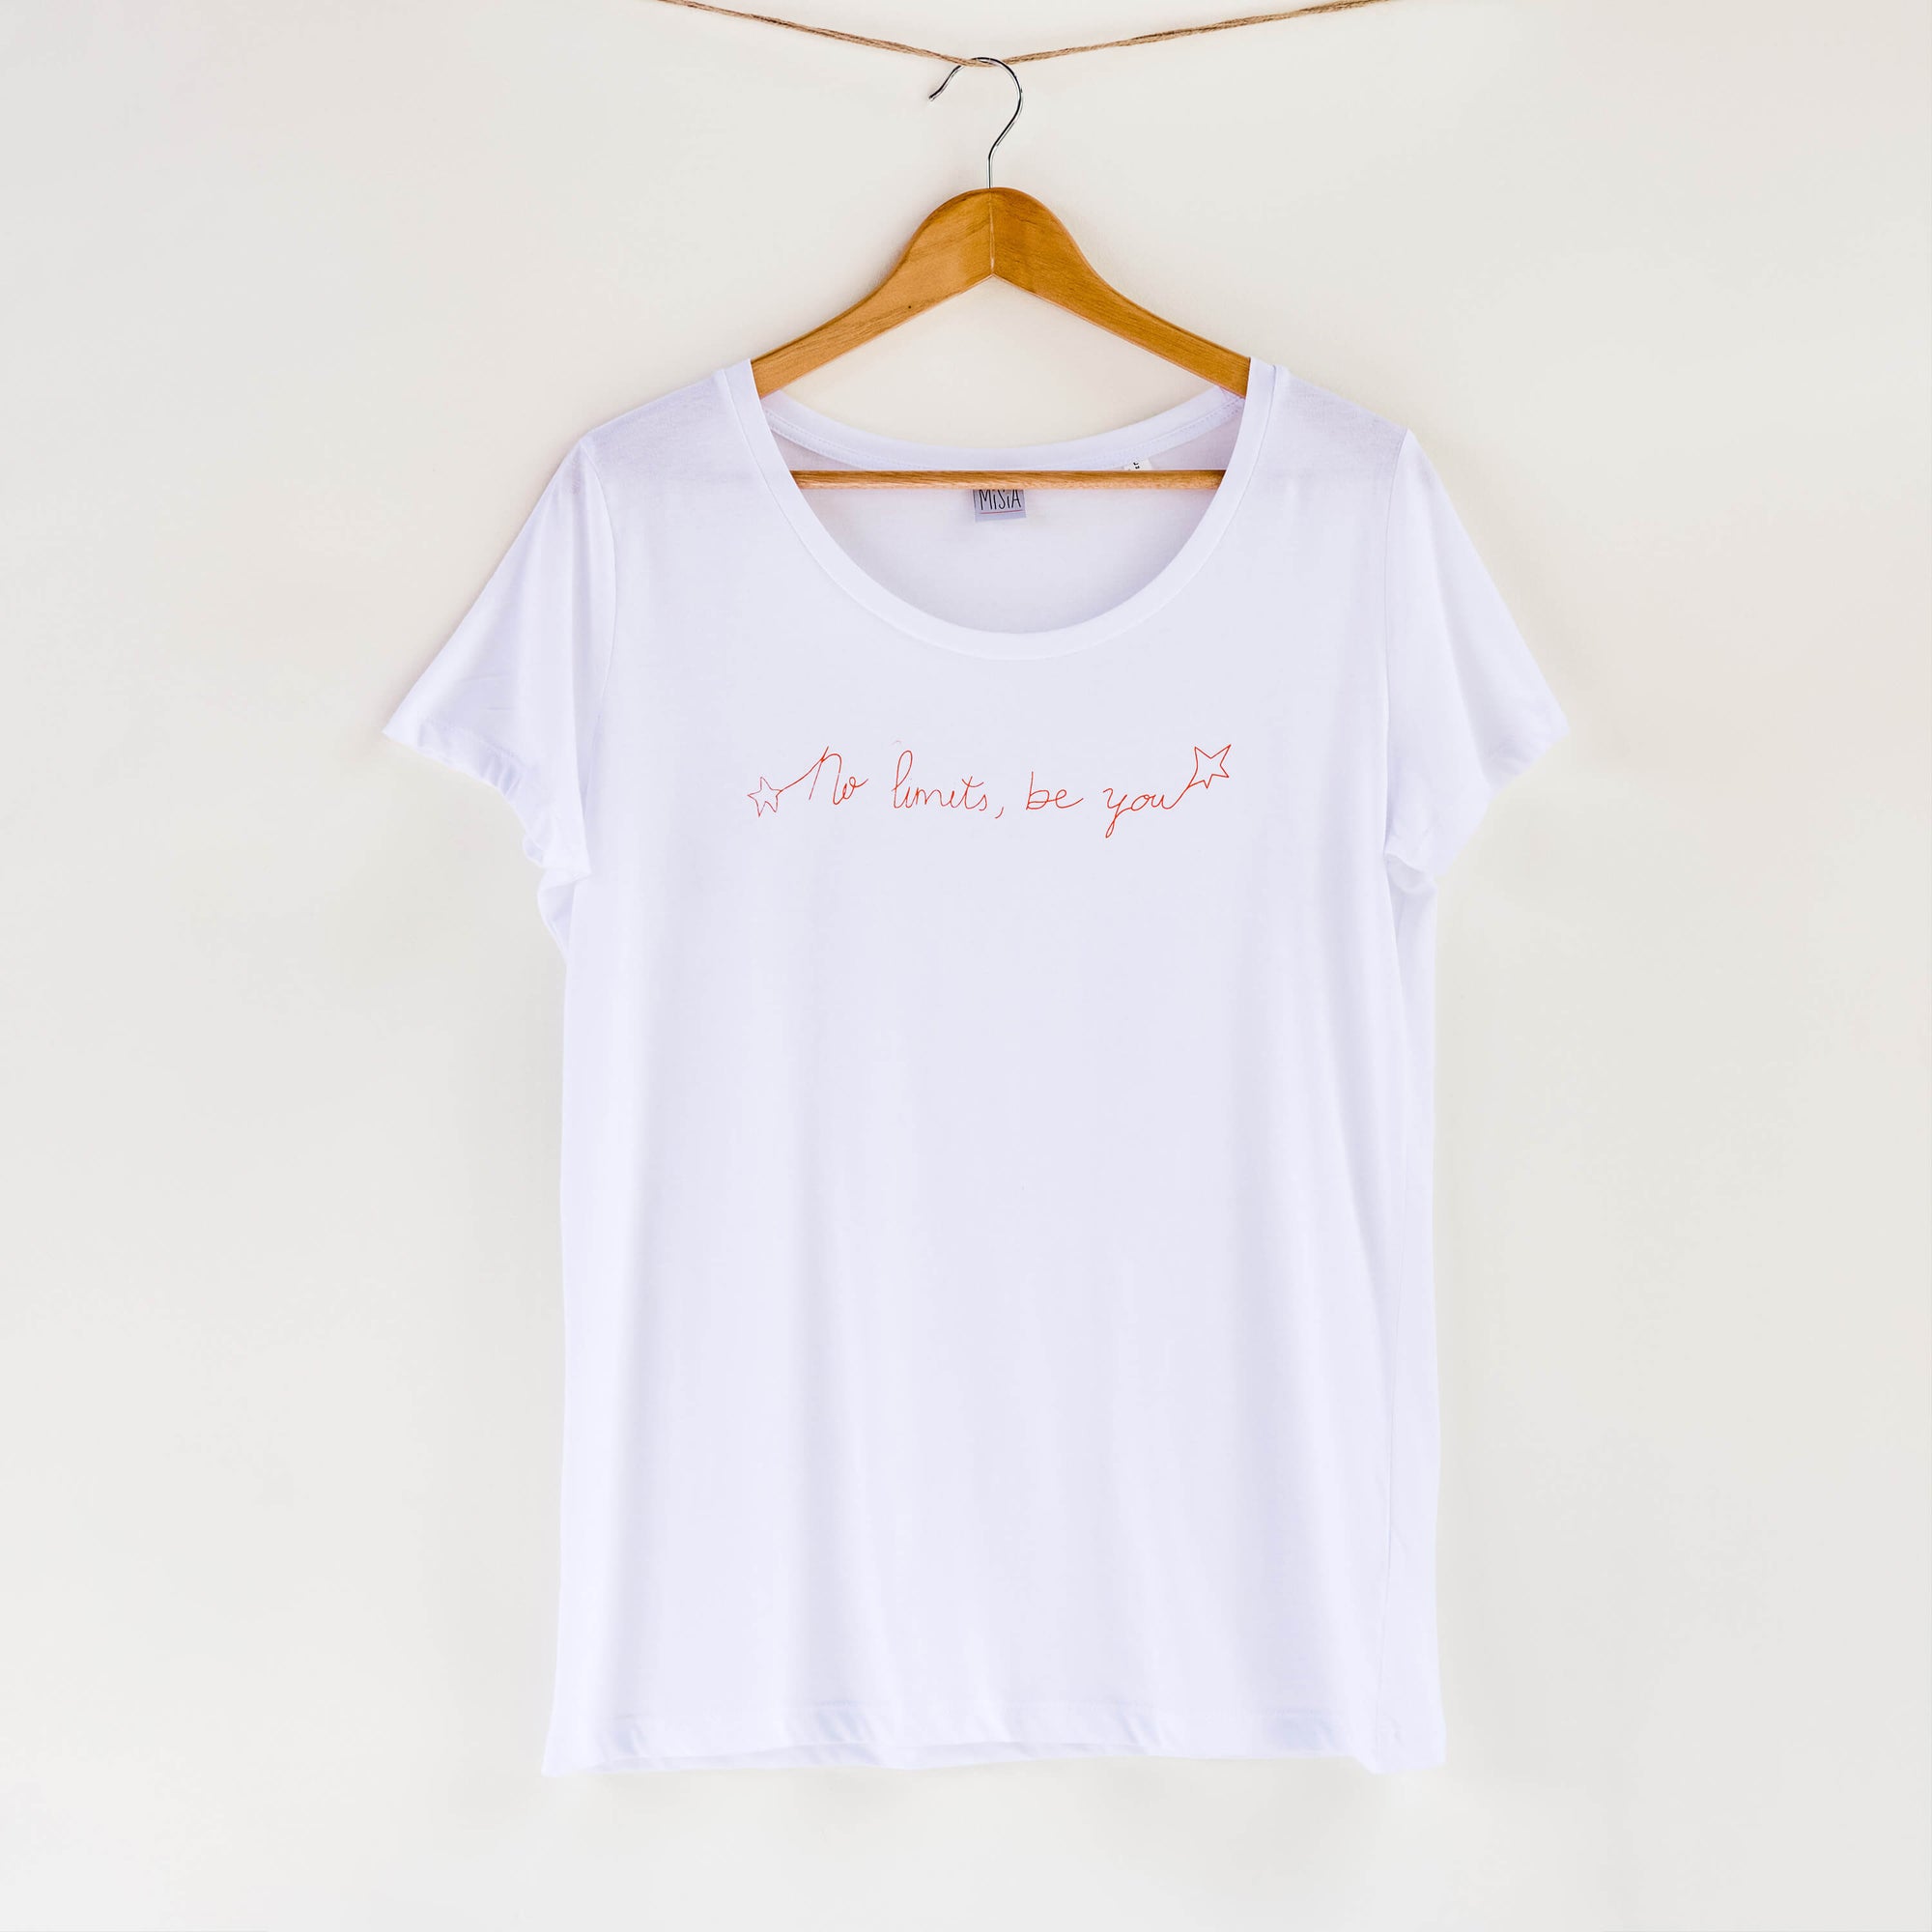 Camiseta blanca de mujer, de algodón orgánico y estampada a mano con tintas ecológicas. Texto estampado en color naranja.